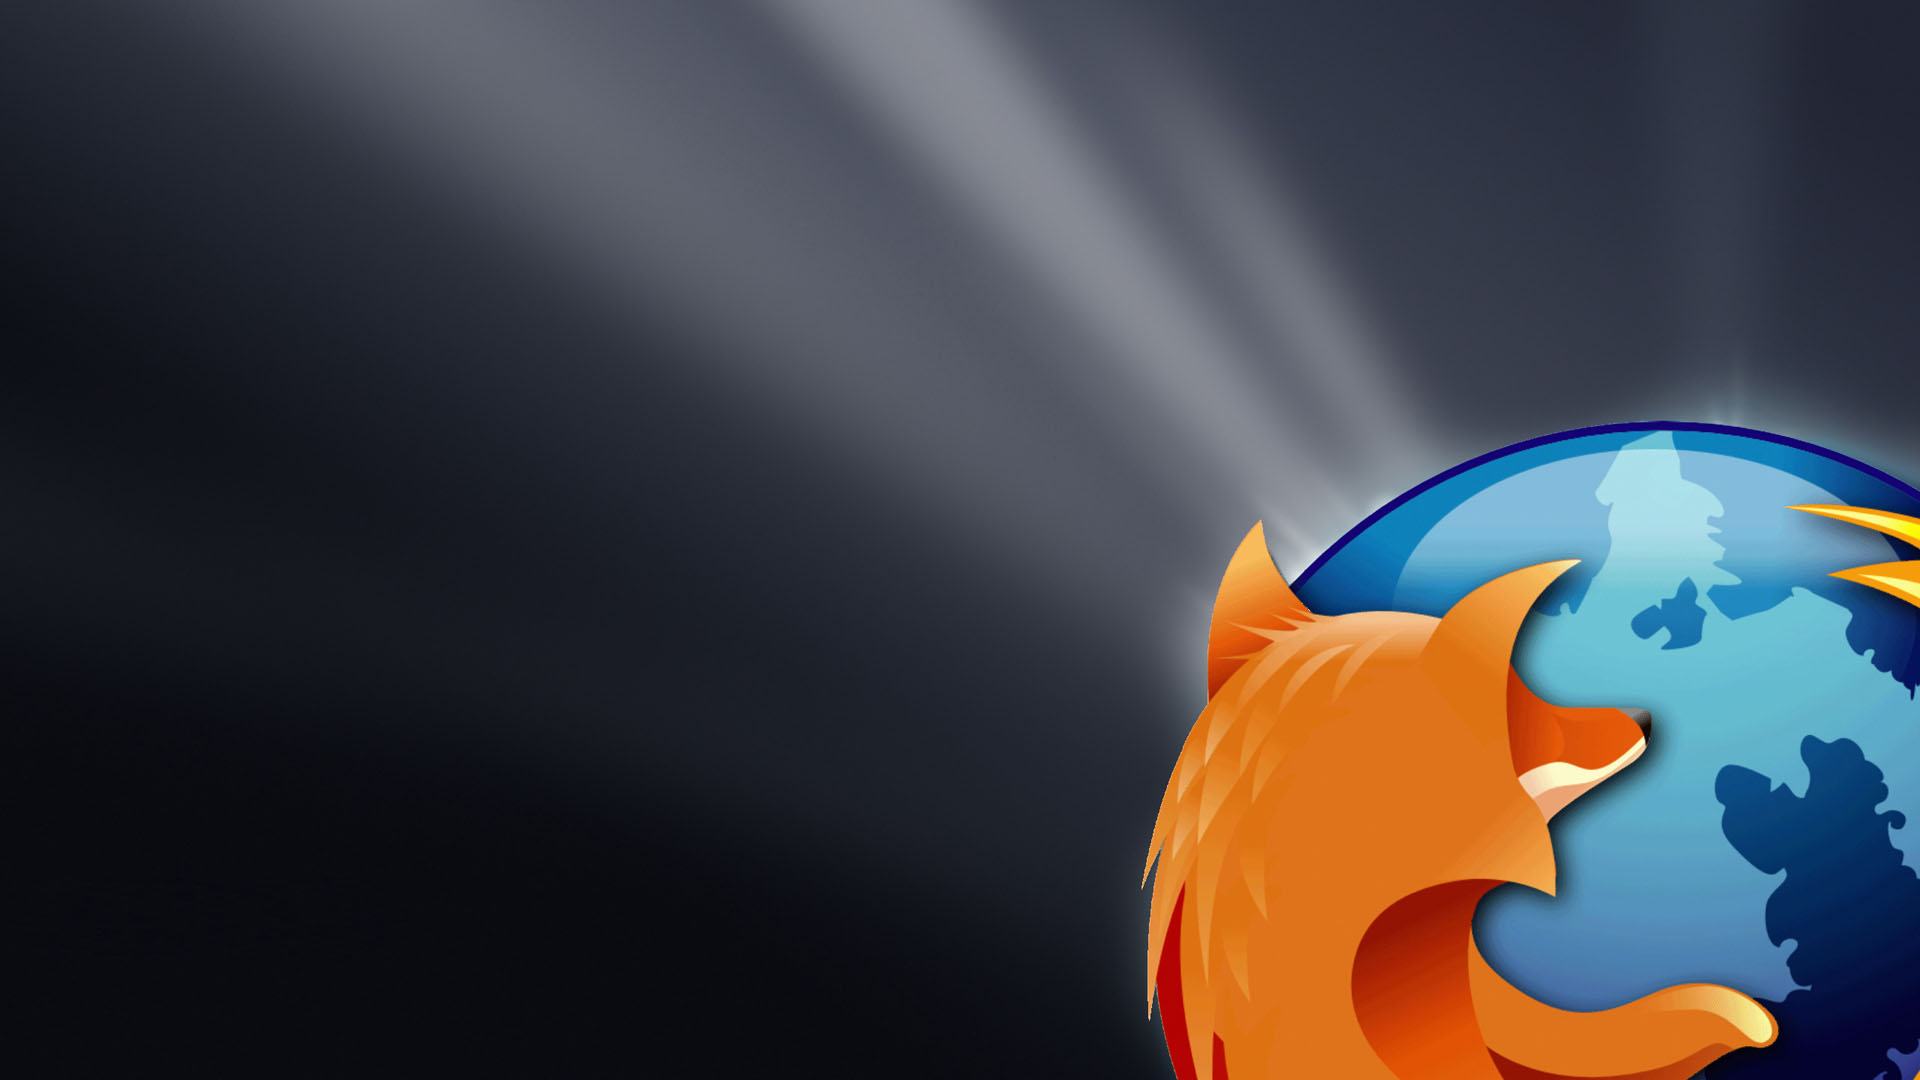 Wallpaper Background Description Firefox Vista 1080p